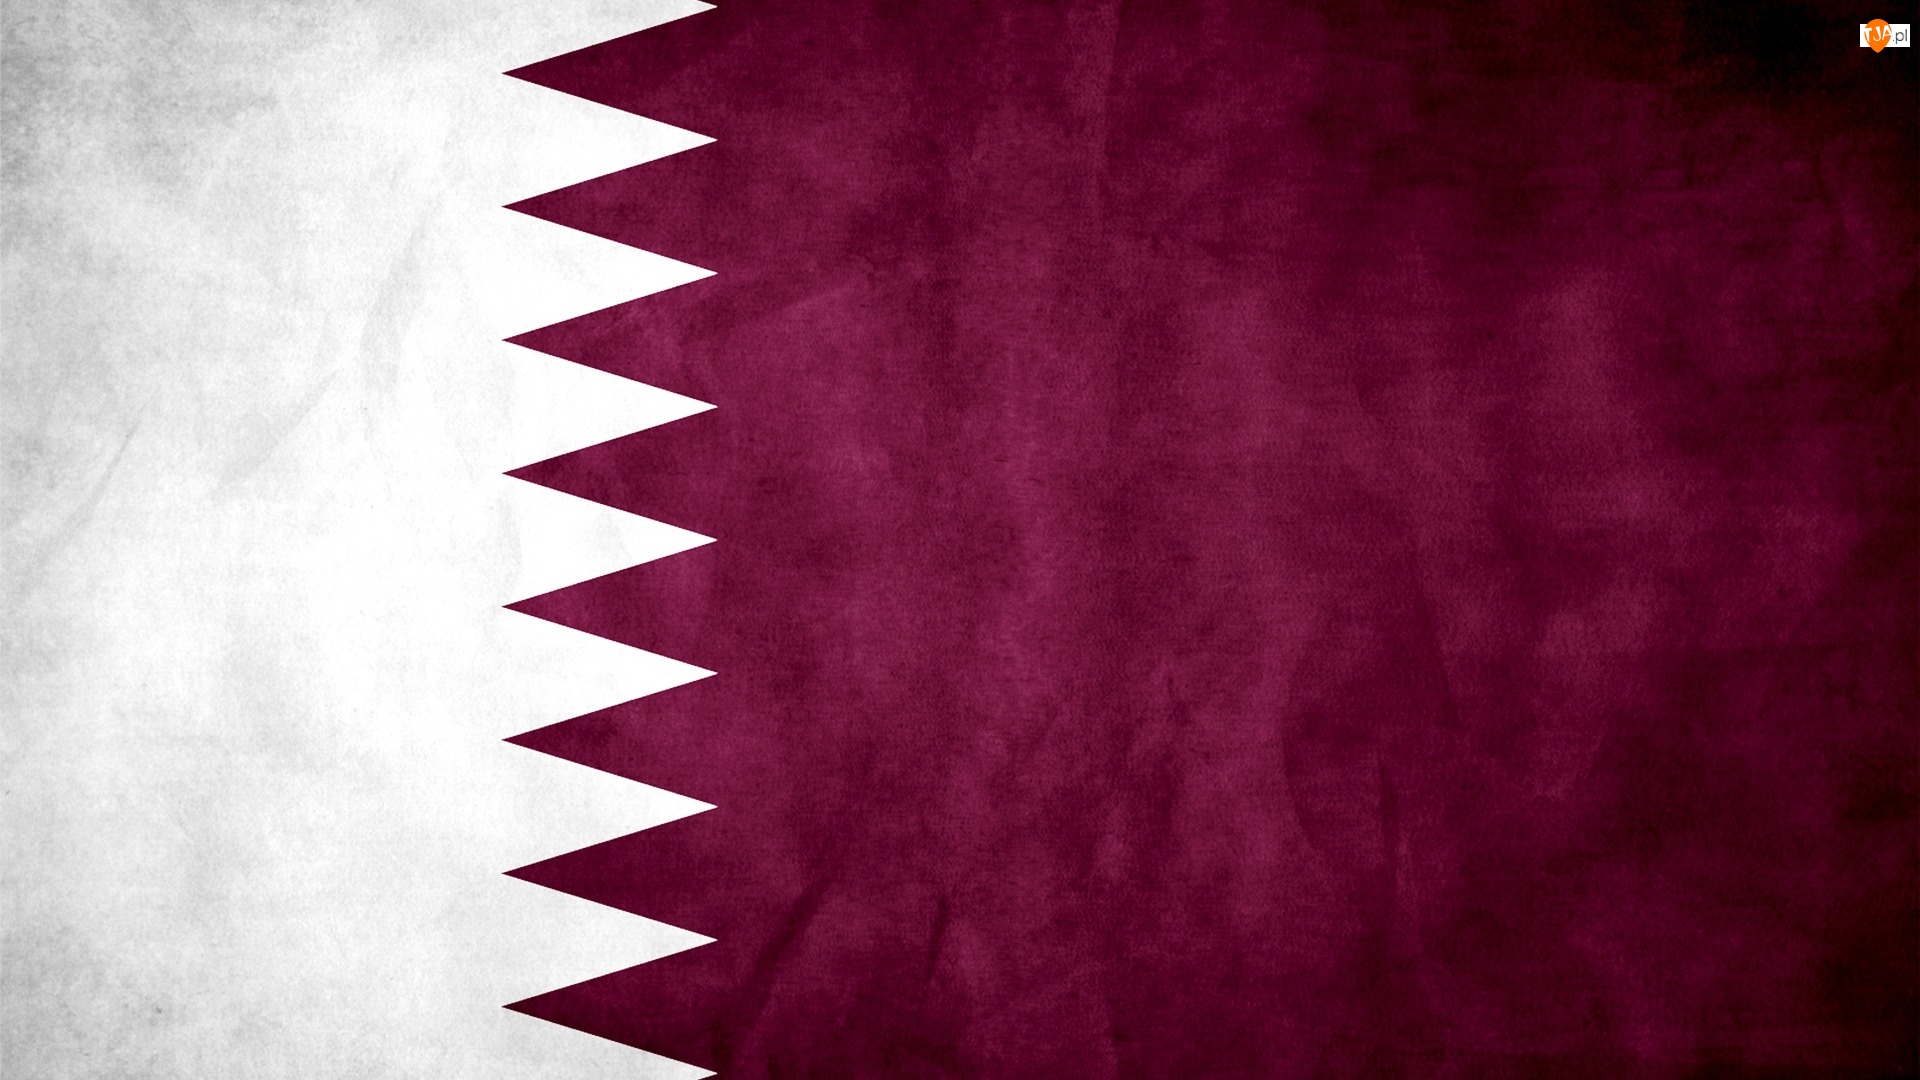 Katar, Flaga